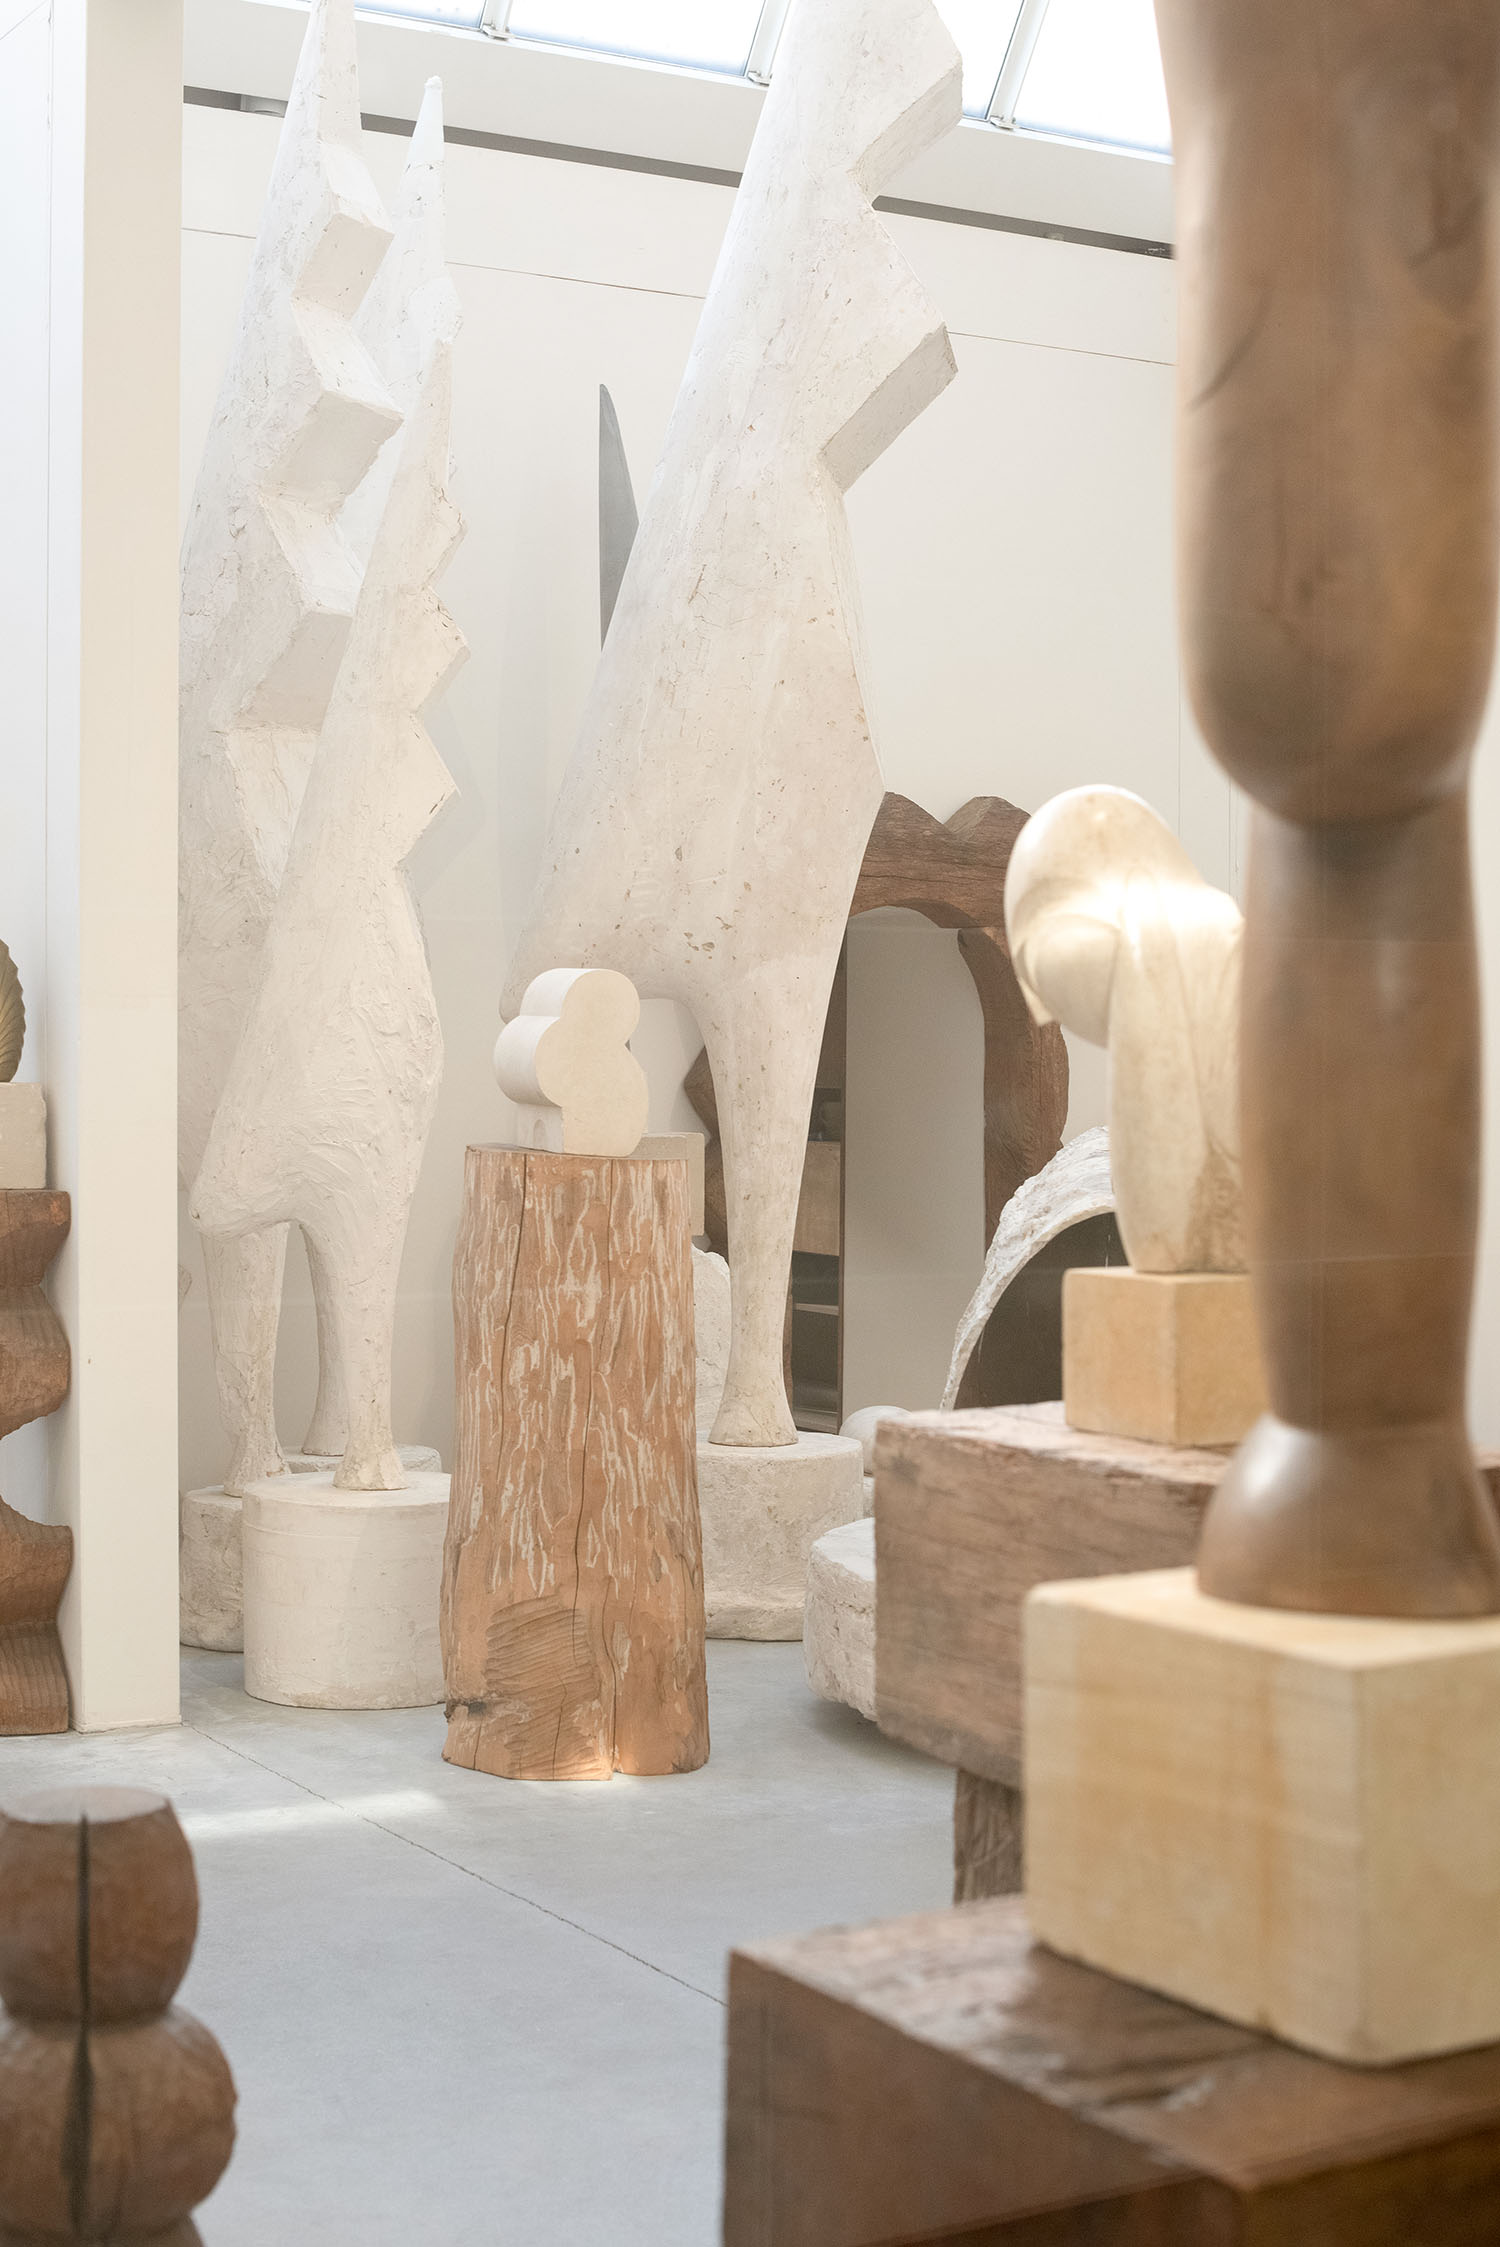 Wooden sculptures at Atelier Brancusi in Paris